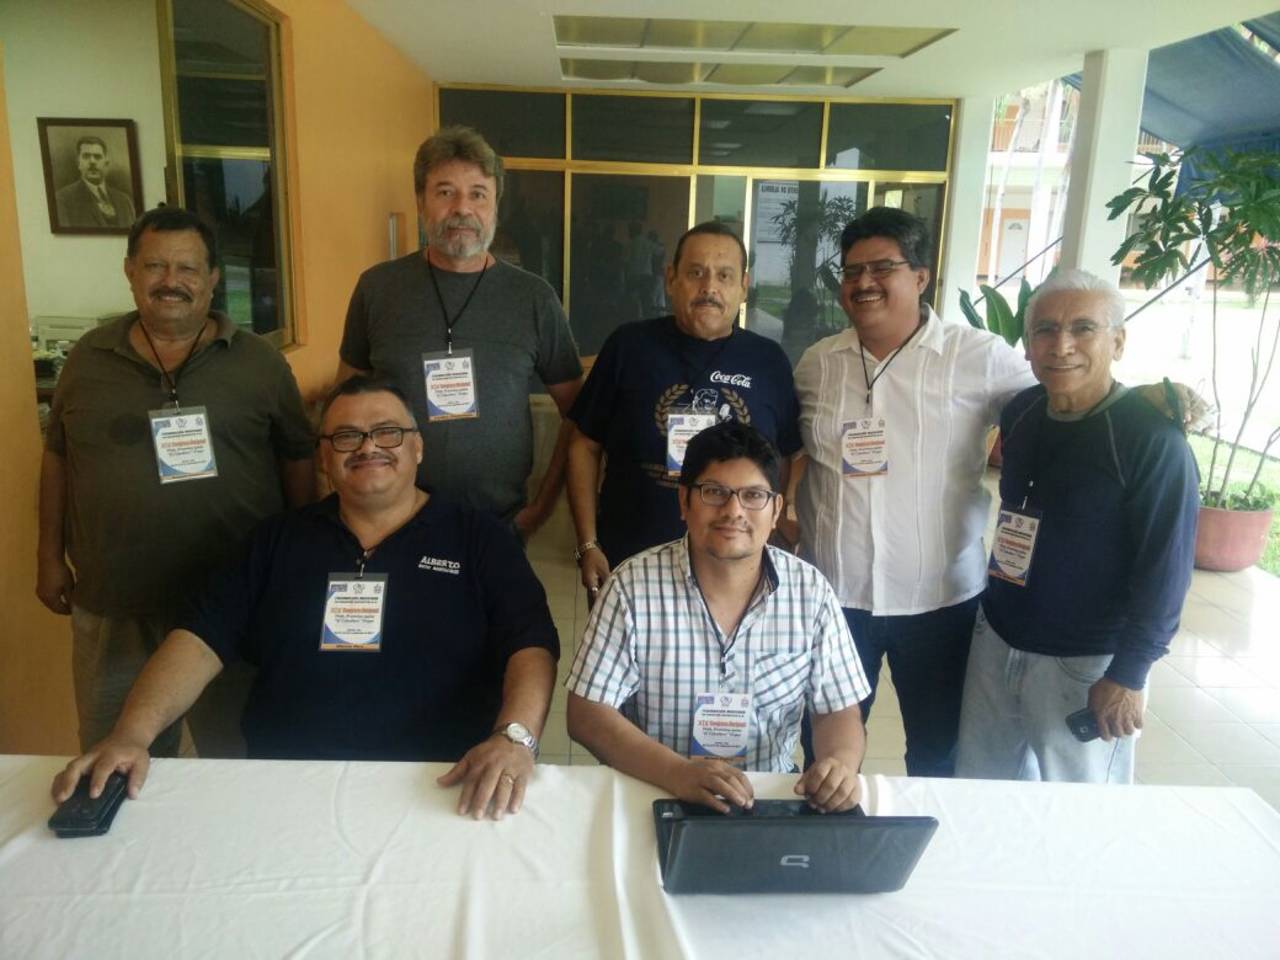 El Comité Ejecutivo recibirá hoy a los representantes de la Asociación de Comunicadores Deportivos de La Laguna A. C. la Acodelac. En marcha el XIX congreso nacional de Femecrode